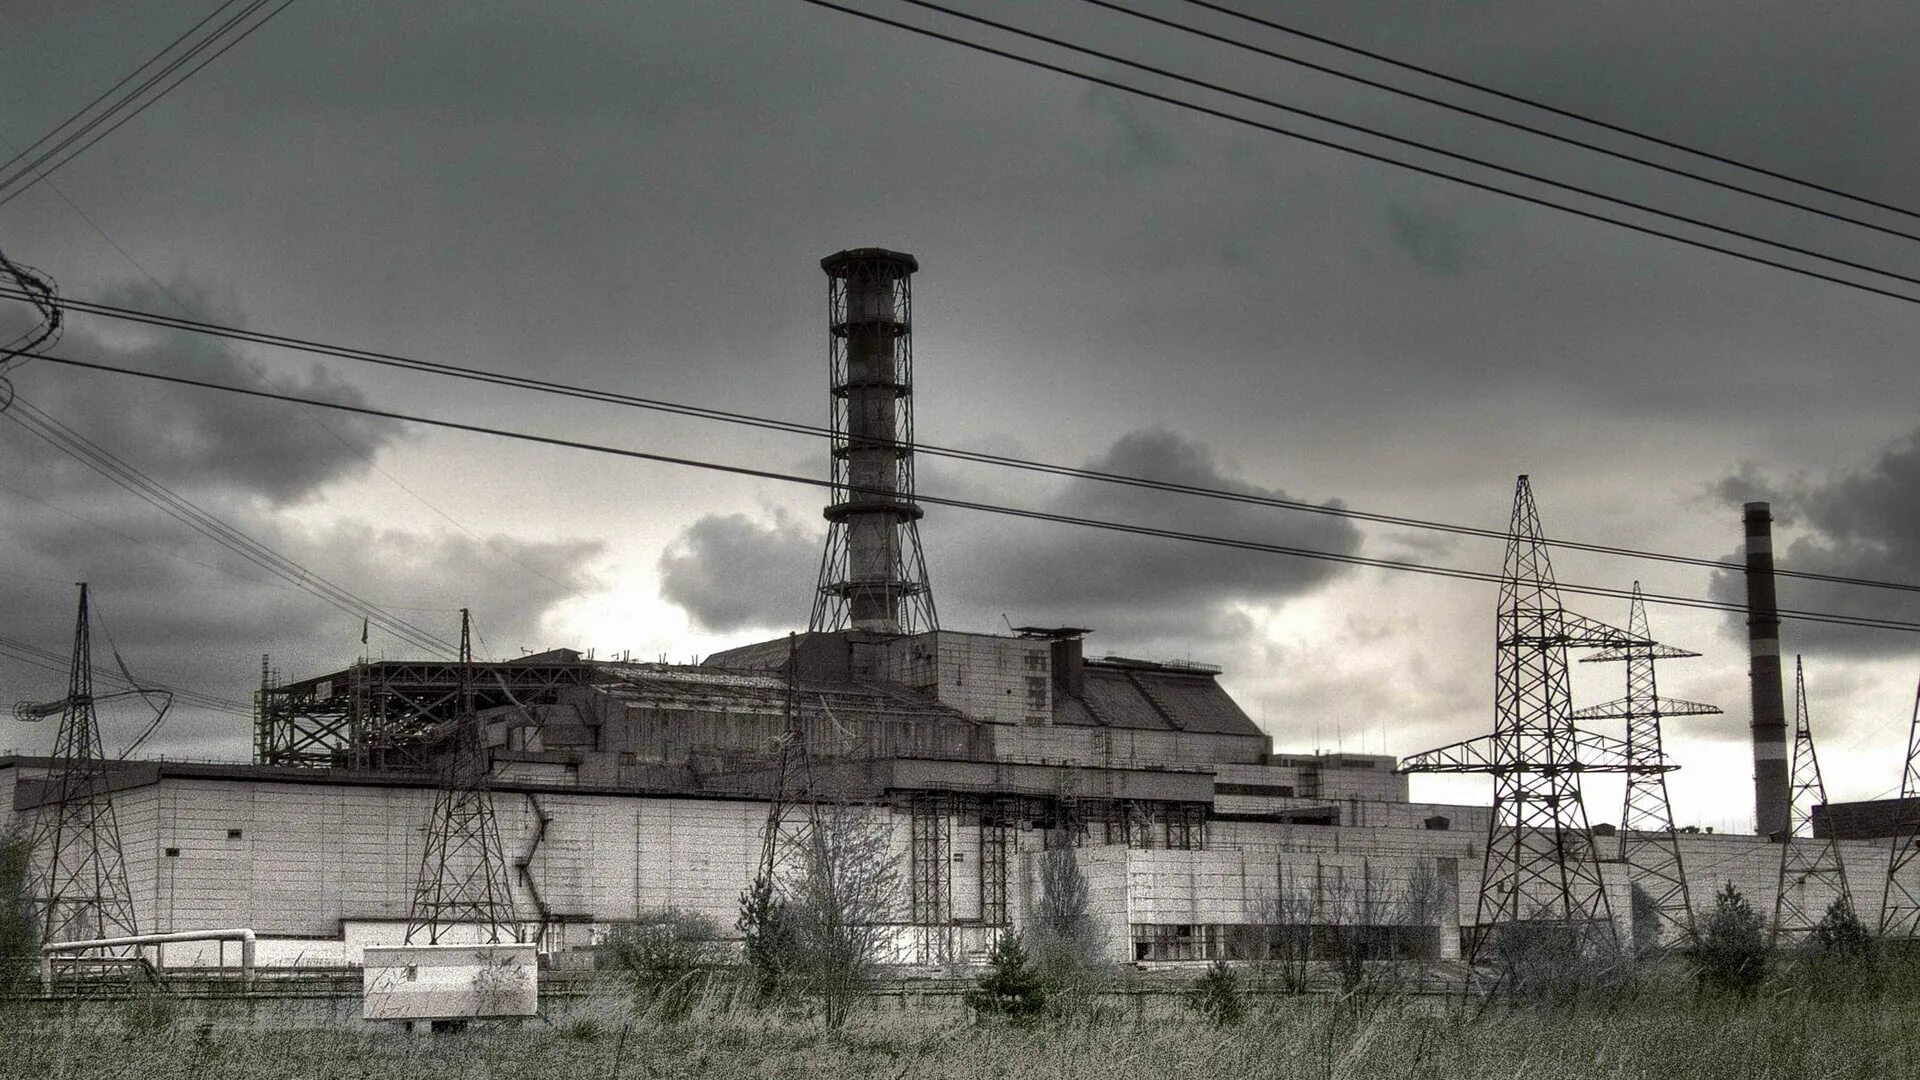 Чернобыль Припять АЭС. Сталкер 4 энергоблок. Припять атомная станция. Припять станция АЭС. Http chernobyl